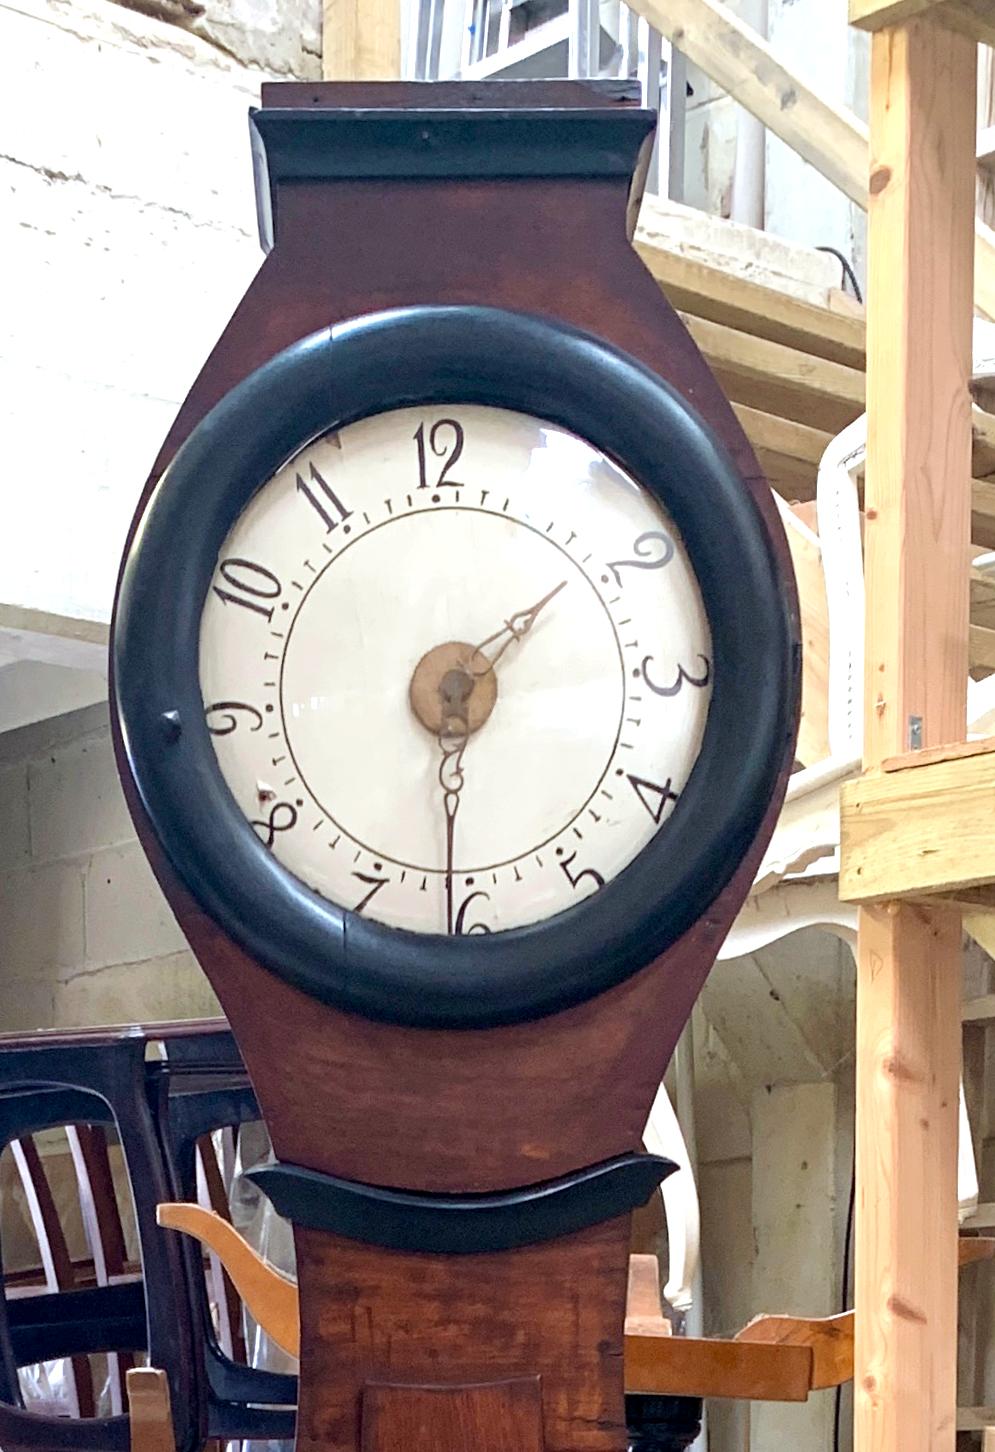 Horloge mora suédoise ancienne du début des années 1800 en finition naturelle avec un corps de forme cintrée et un bon visage avec beaucoup de détails avec des accents de style ormolu. Mesures : 210cm.

Il possède le ventre classique allongé d'une